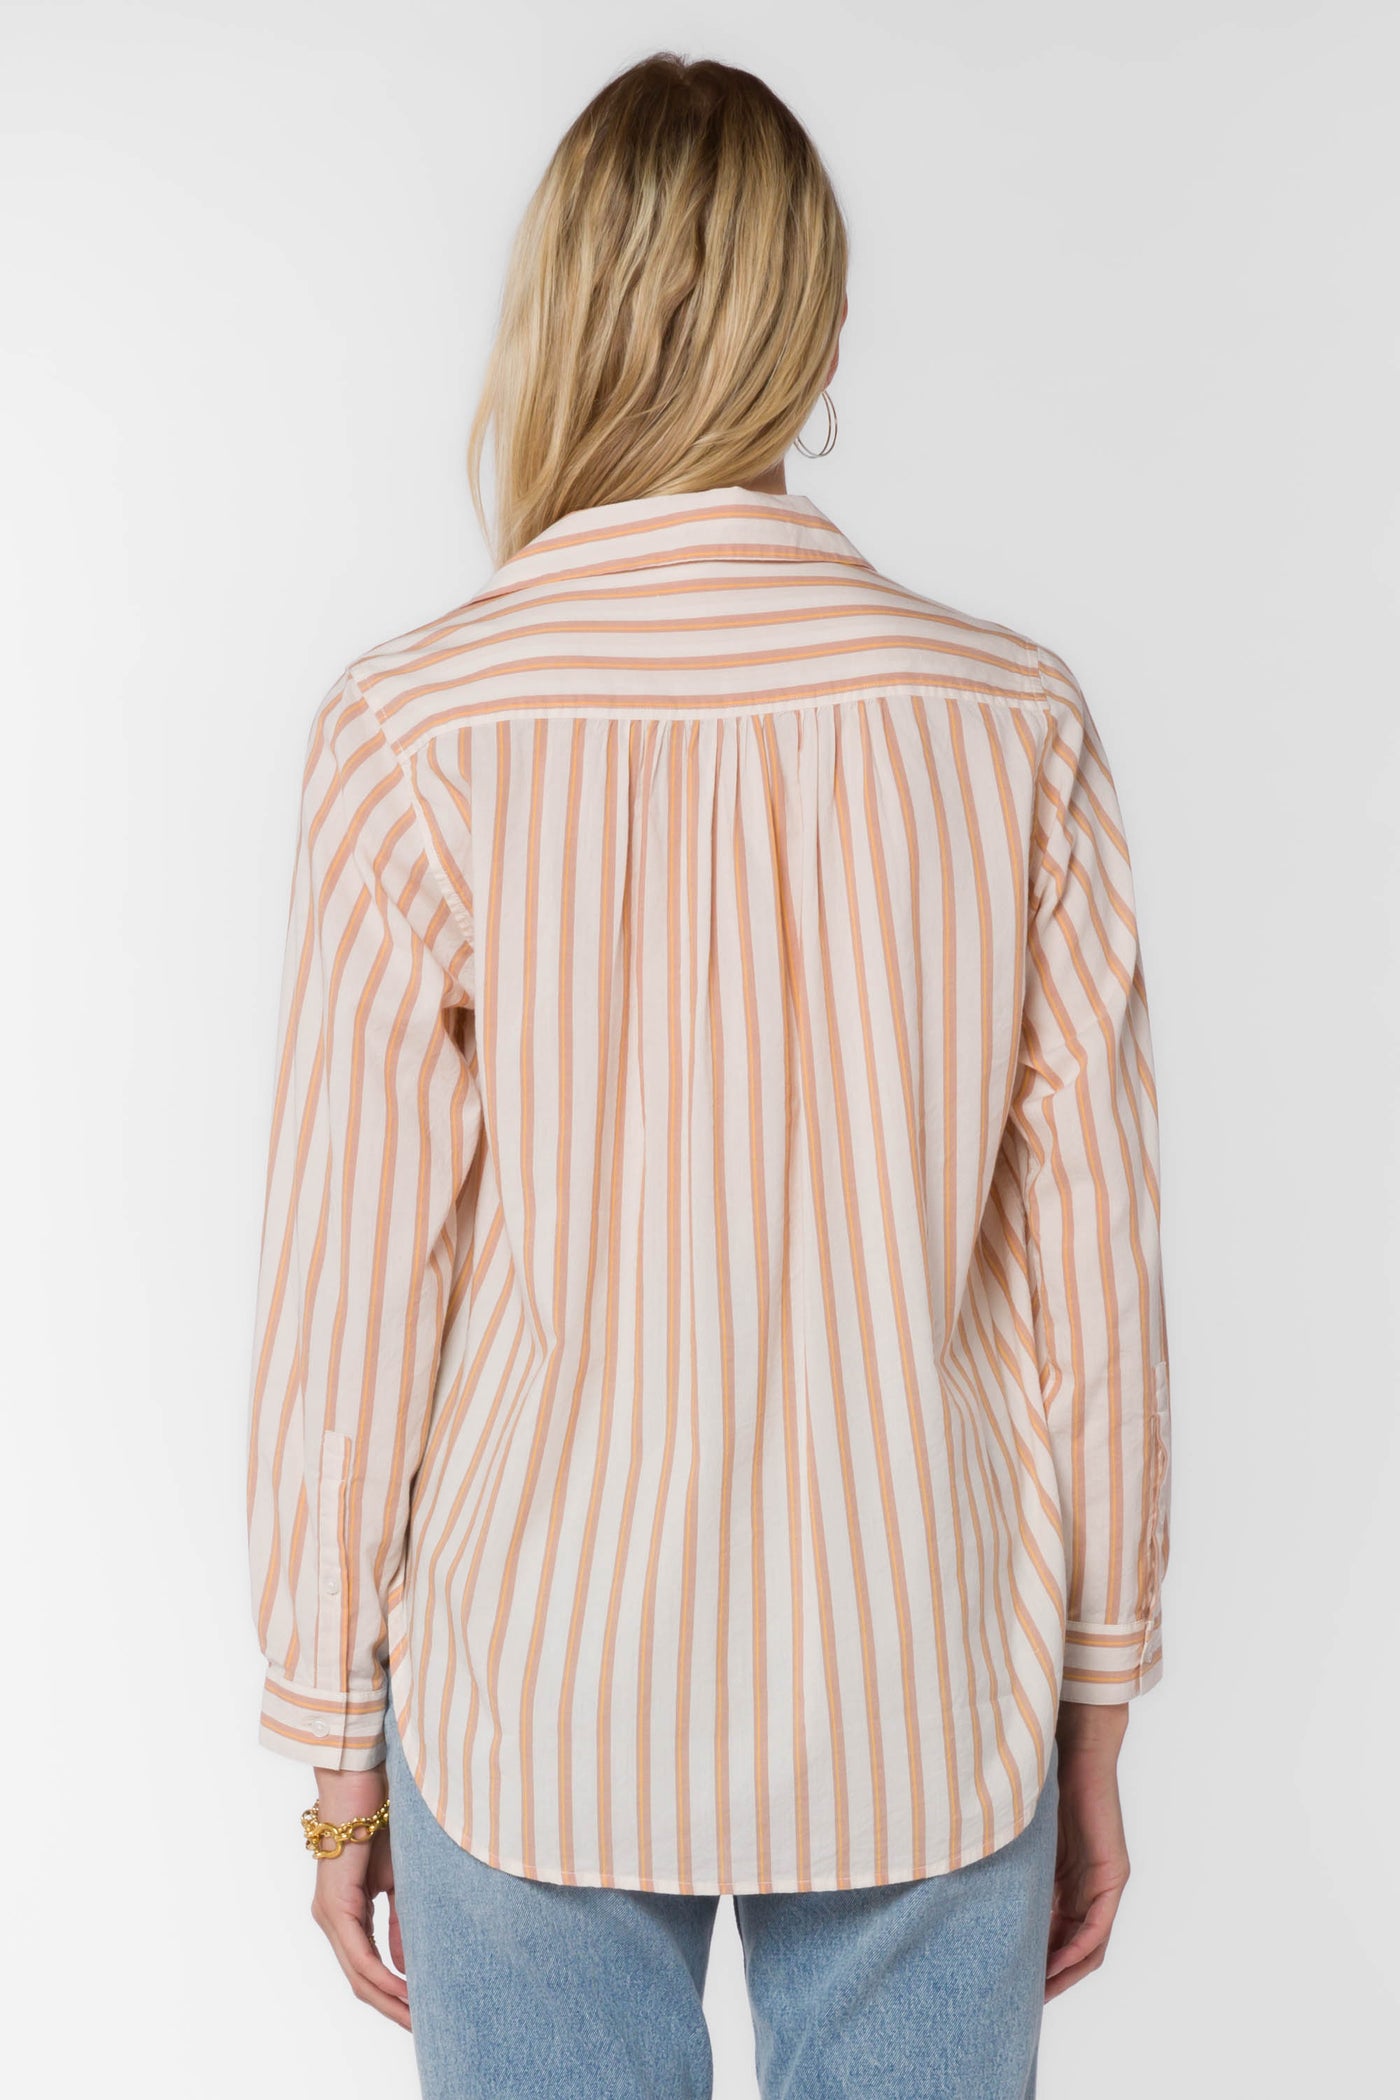 Kenzie Desert Stripe Blouse - Tops - Velvet Heart Clothing